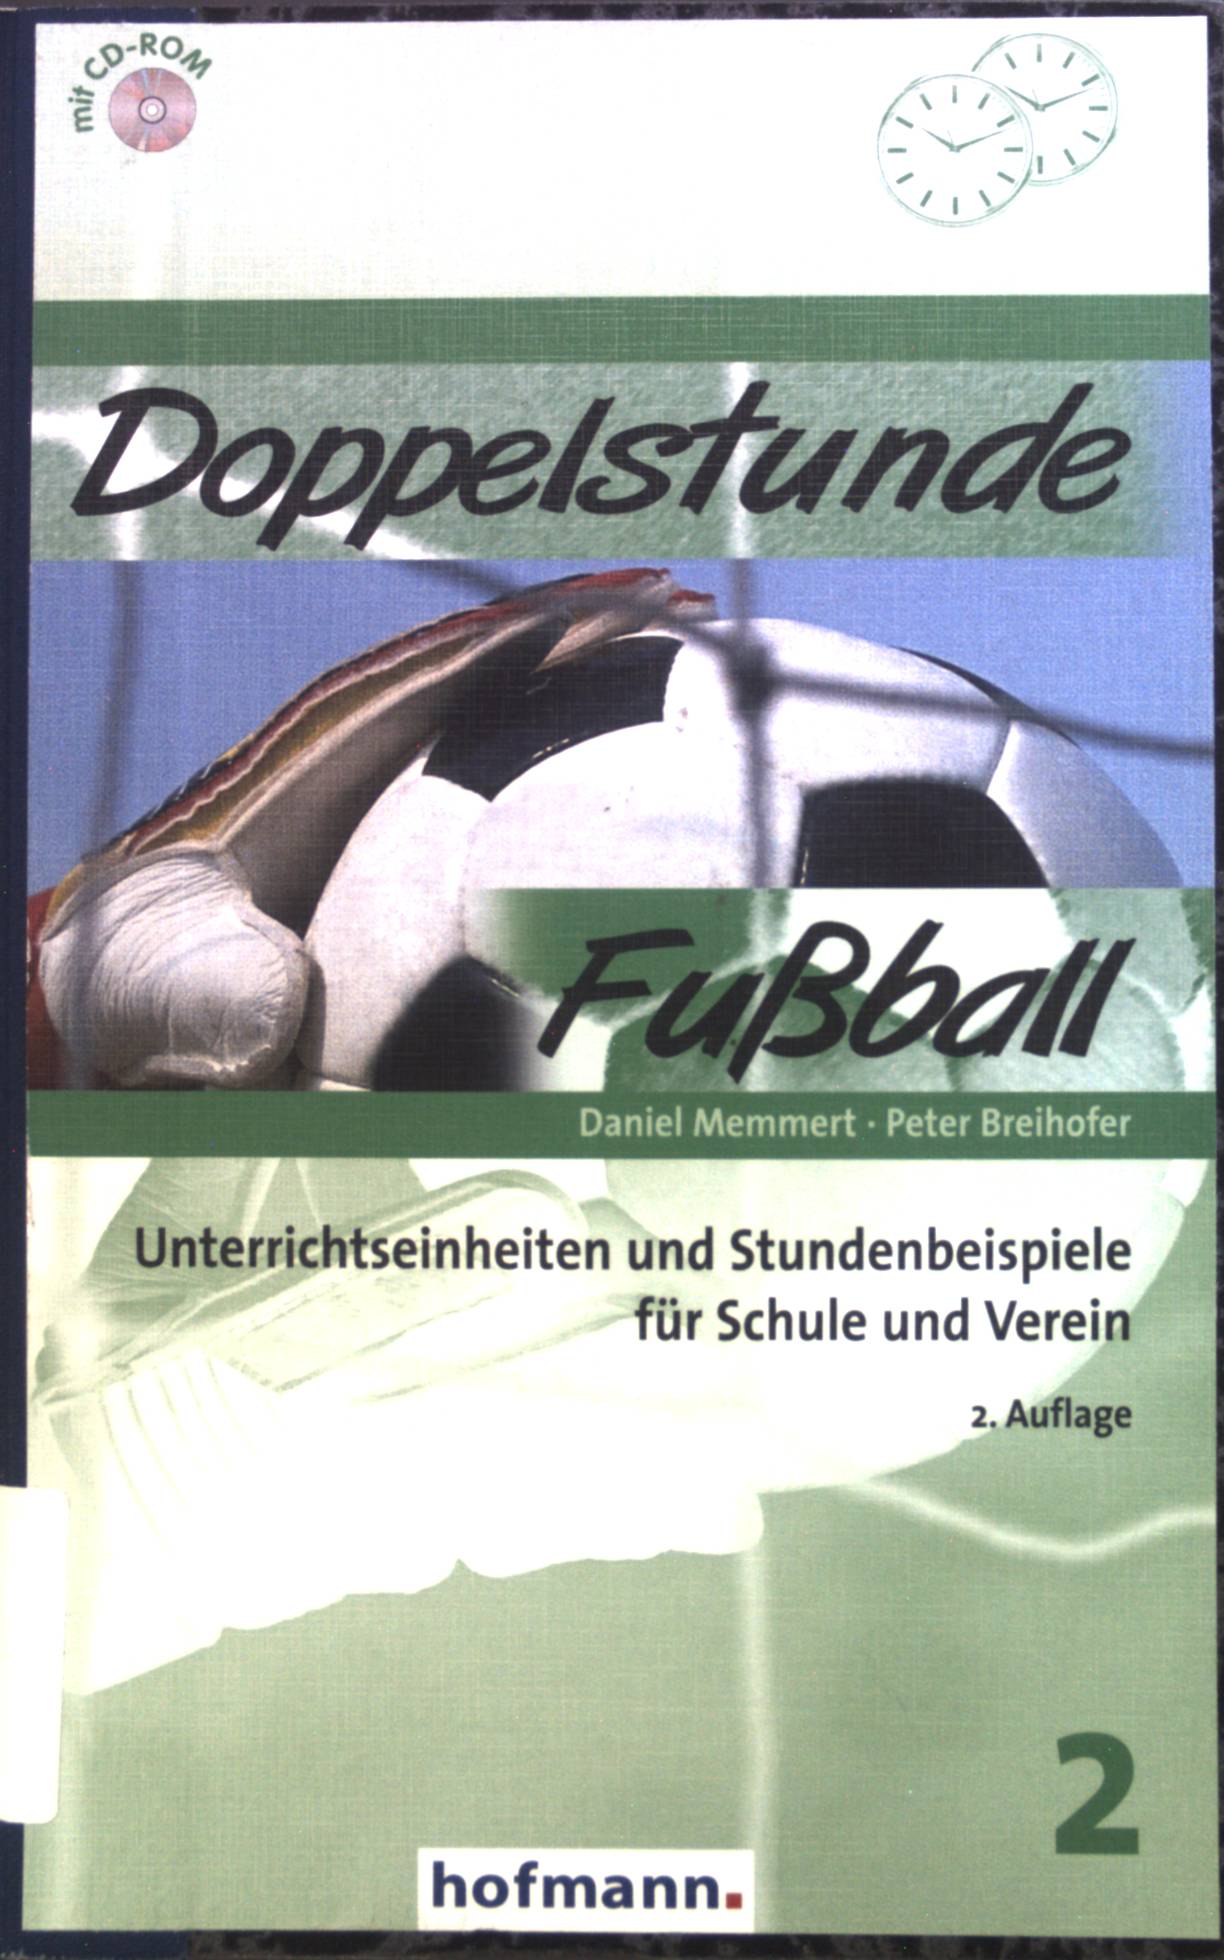 Doppelstunde Fußball : Unterrichtseinheiten und Stundenbeispiele für Schule und Verein.  2., Auflage - Memmert, Daniel und Peter Breihofer